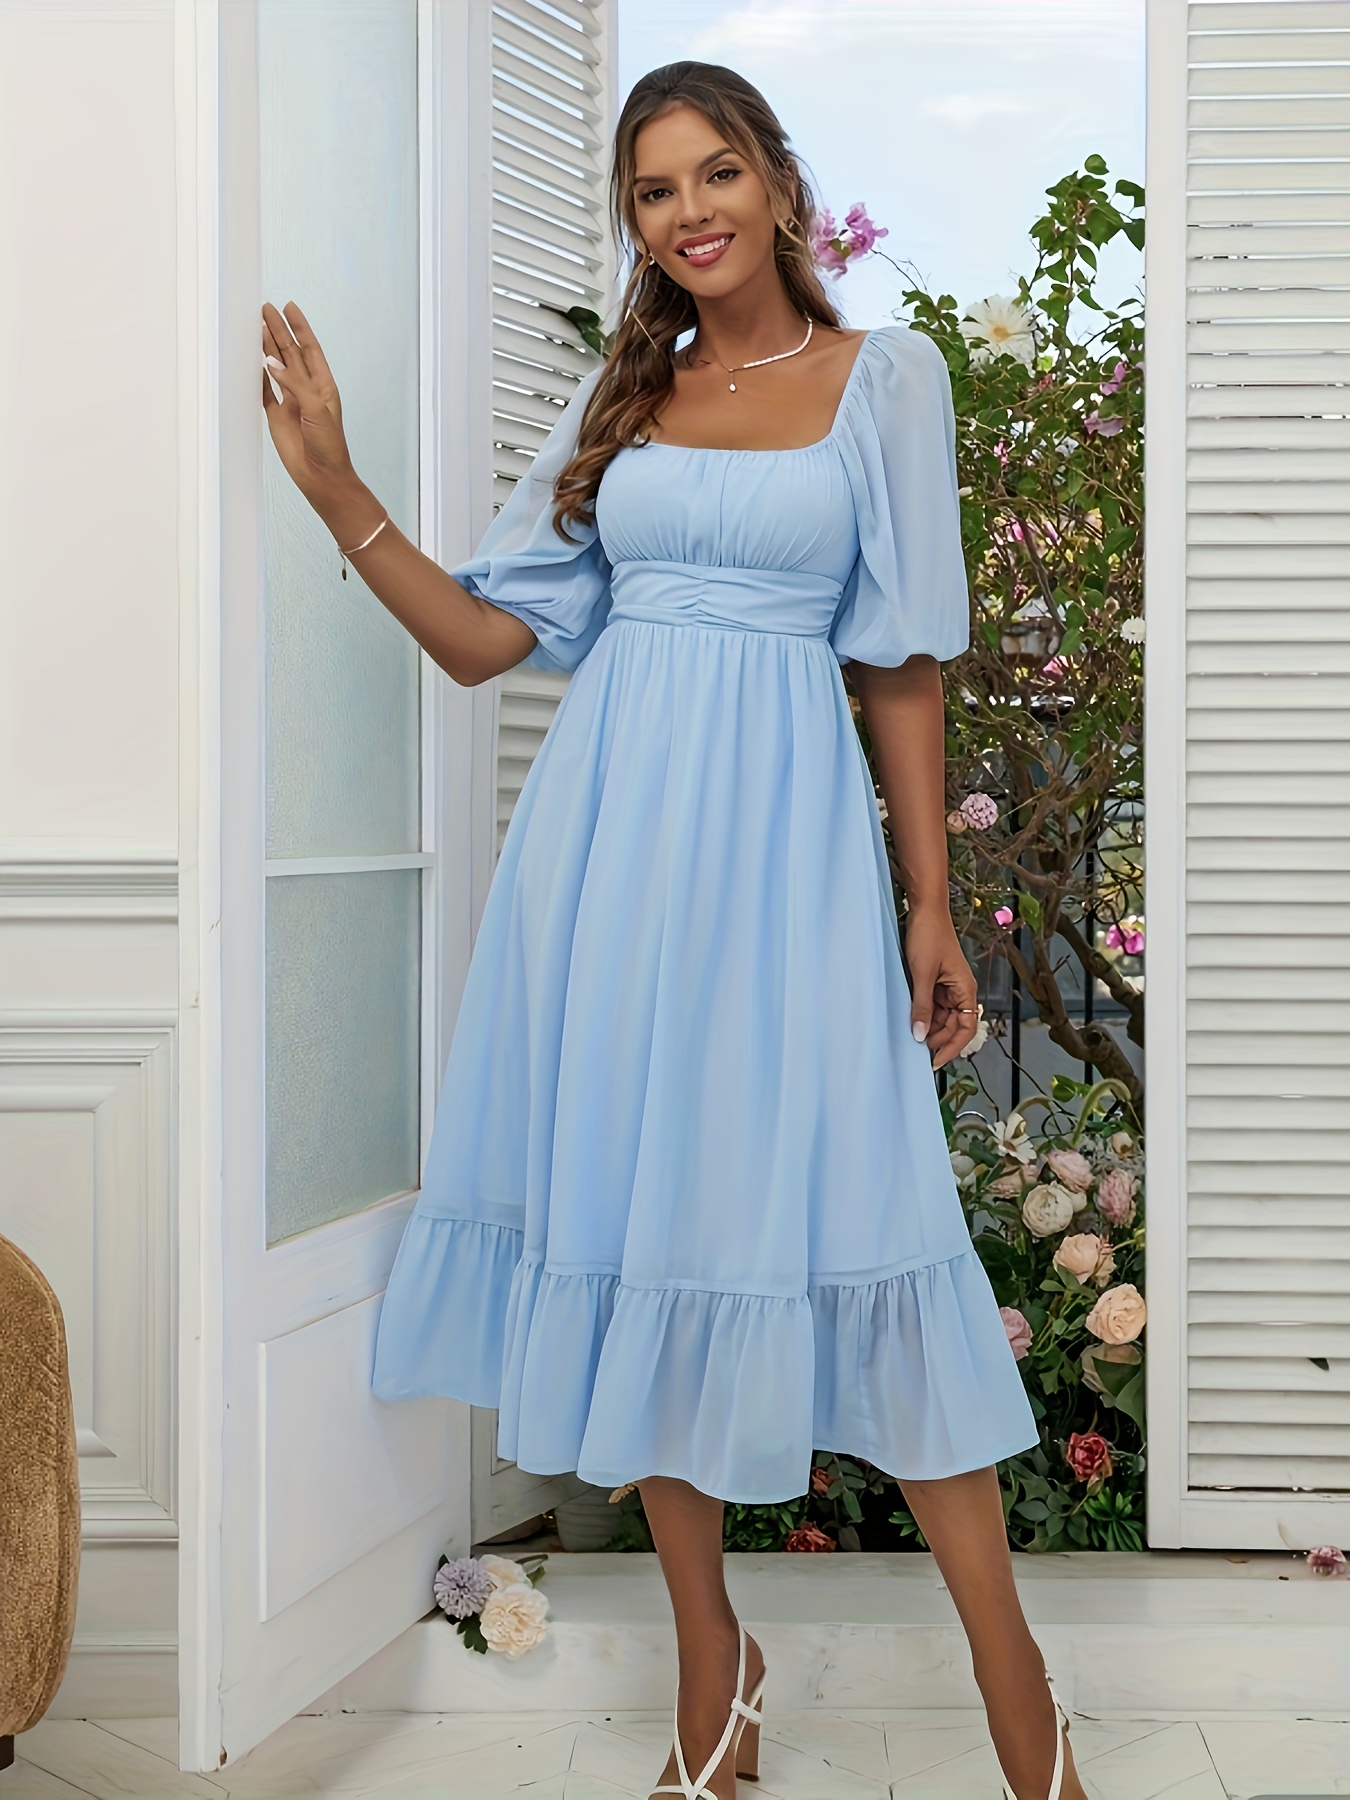 Square Neck Ruffle Trim Midi Dress - Women's Sleeveless Floral Print  Dresses - Blue - Dresses